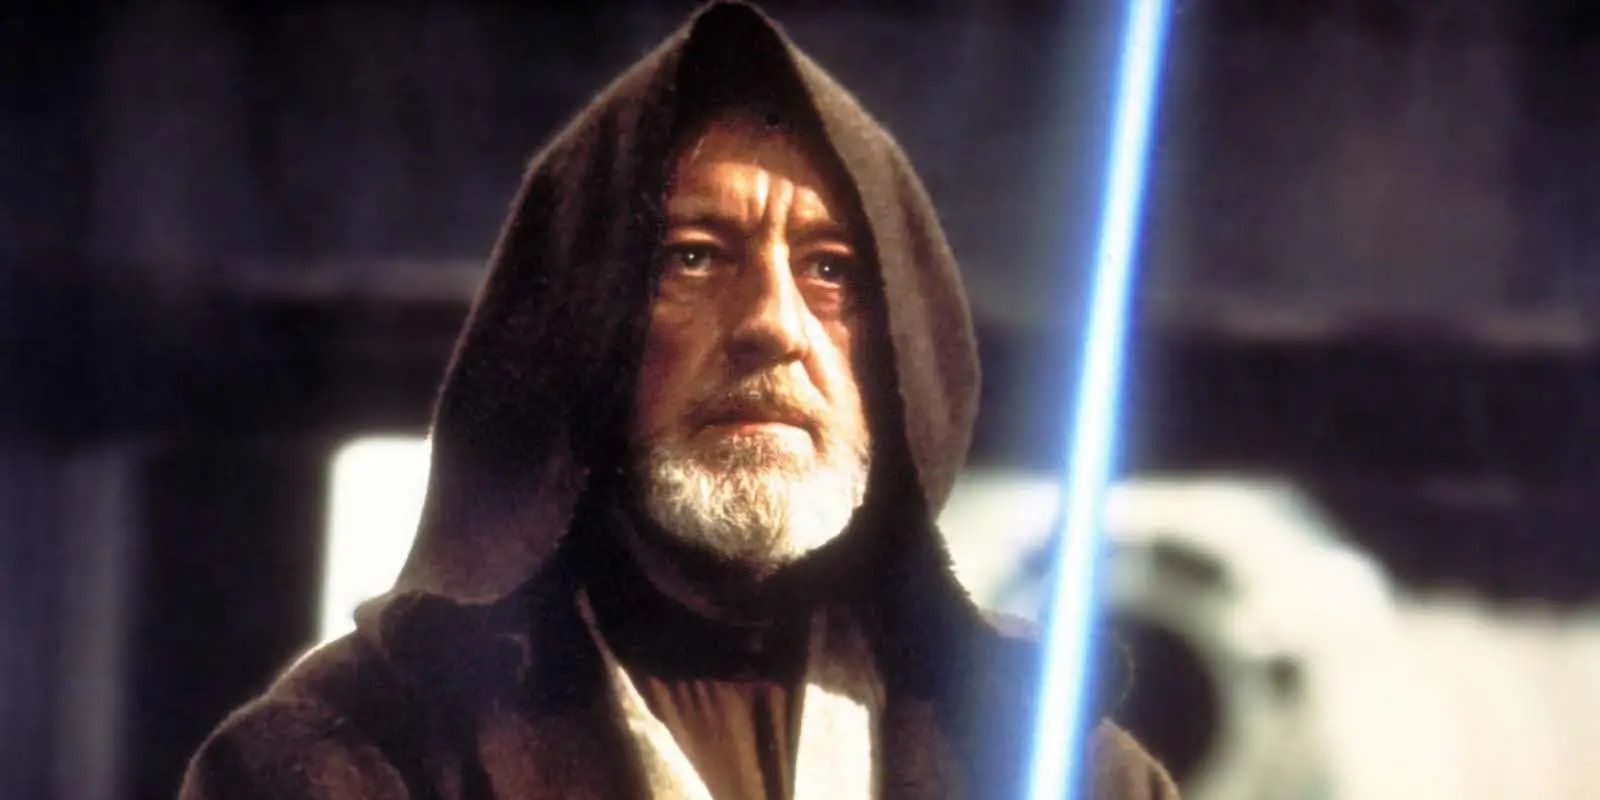 Ben Kenobi on the Death Star in Star Wars